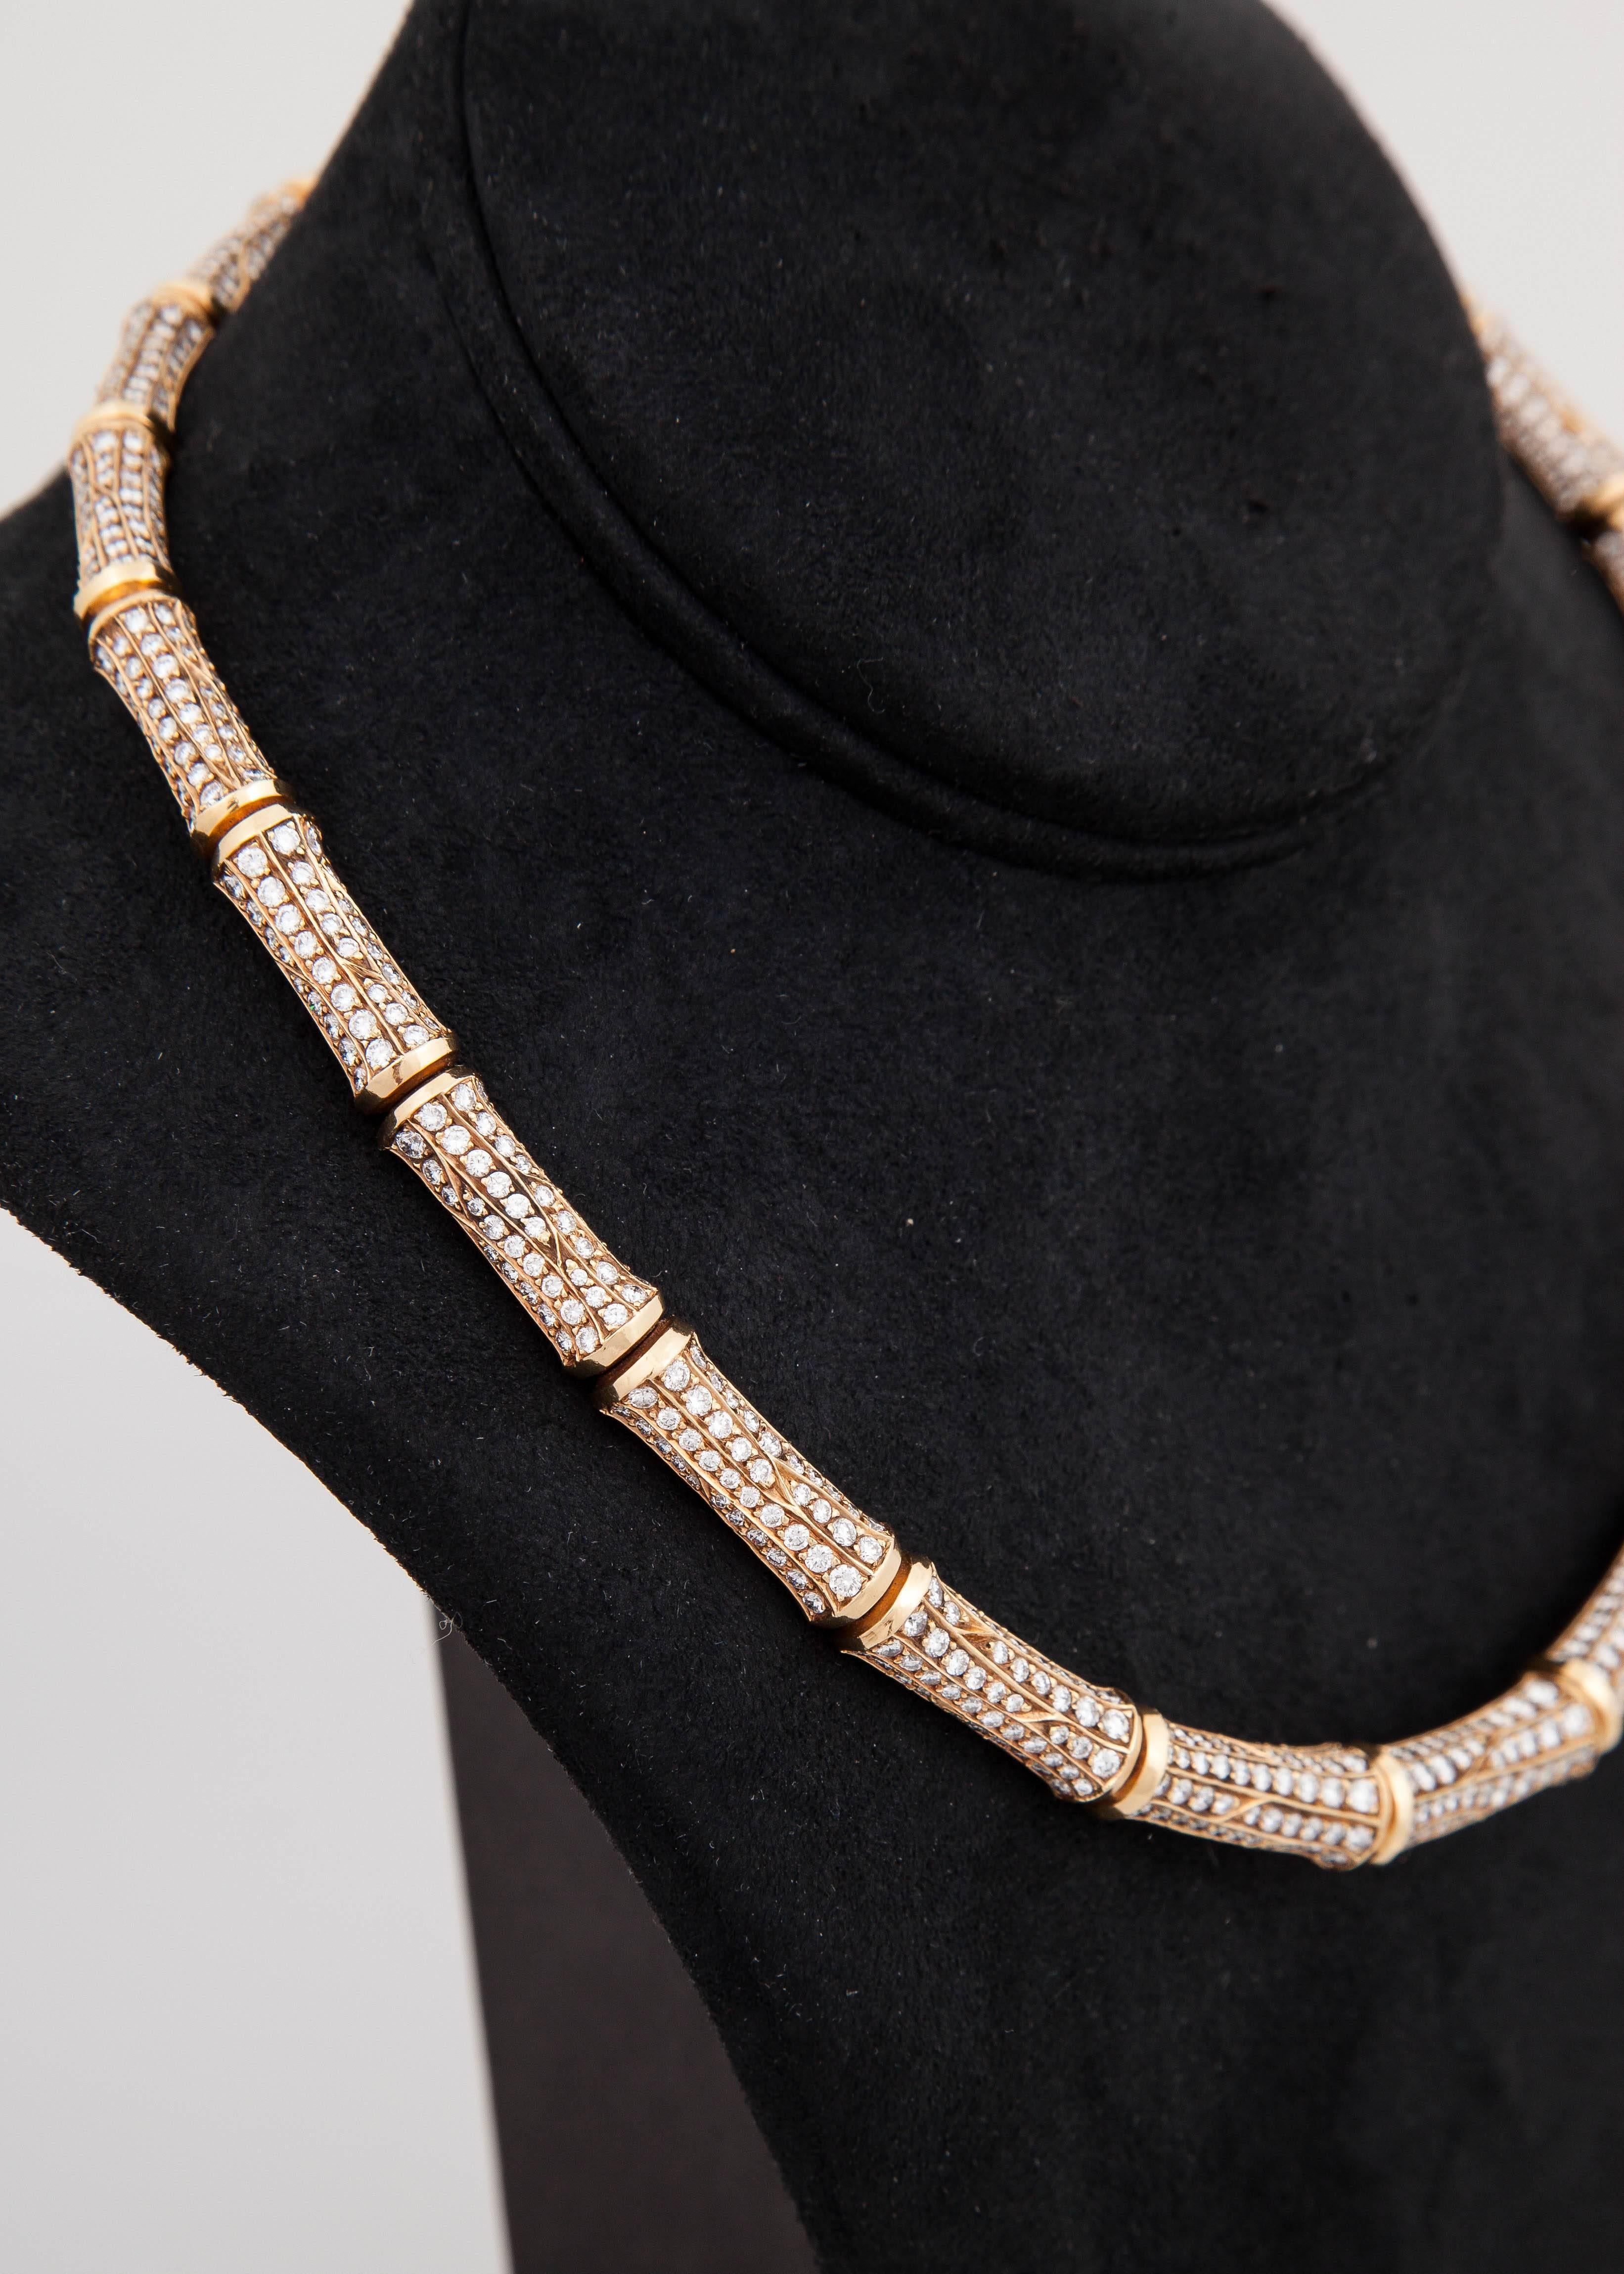 Women's Cartier Stunning Bamboo Diamond Gold Link Necklace